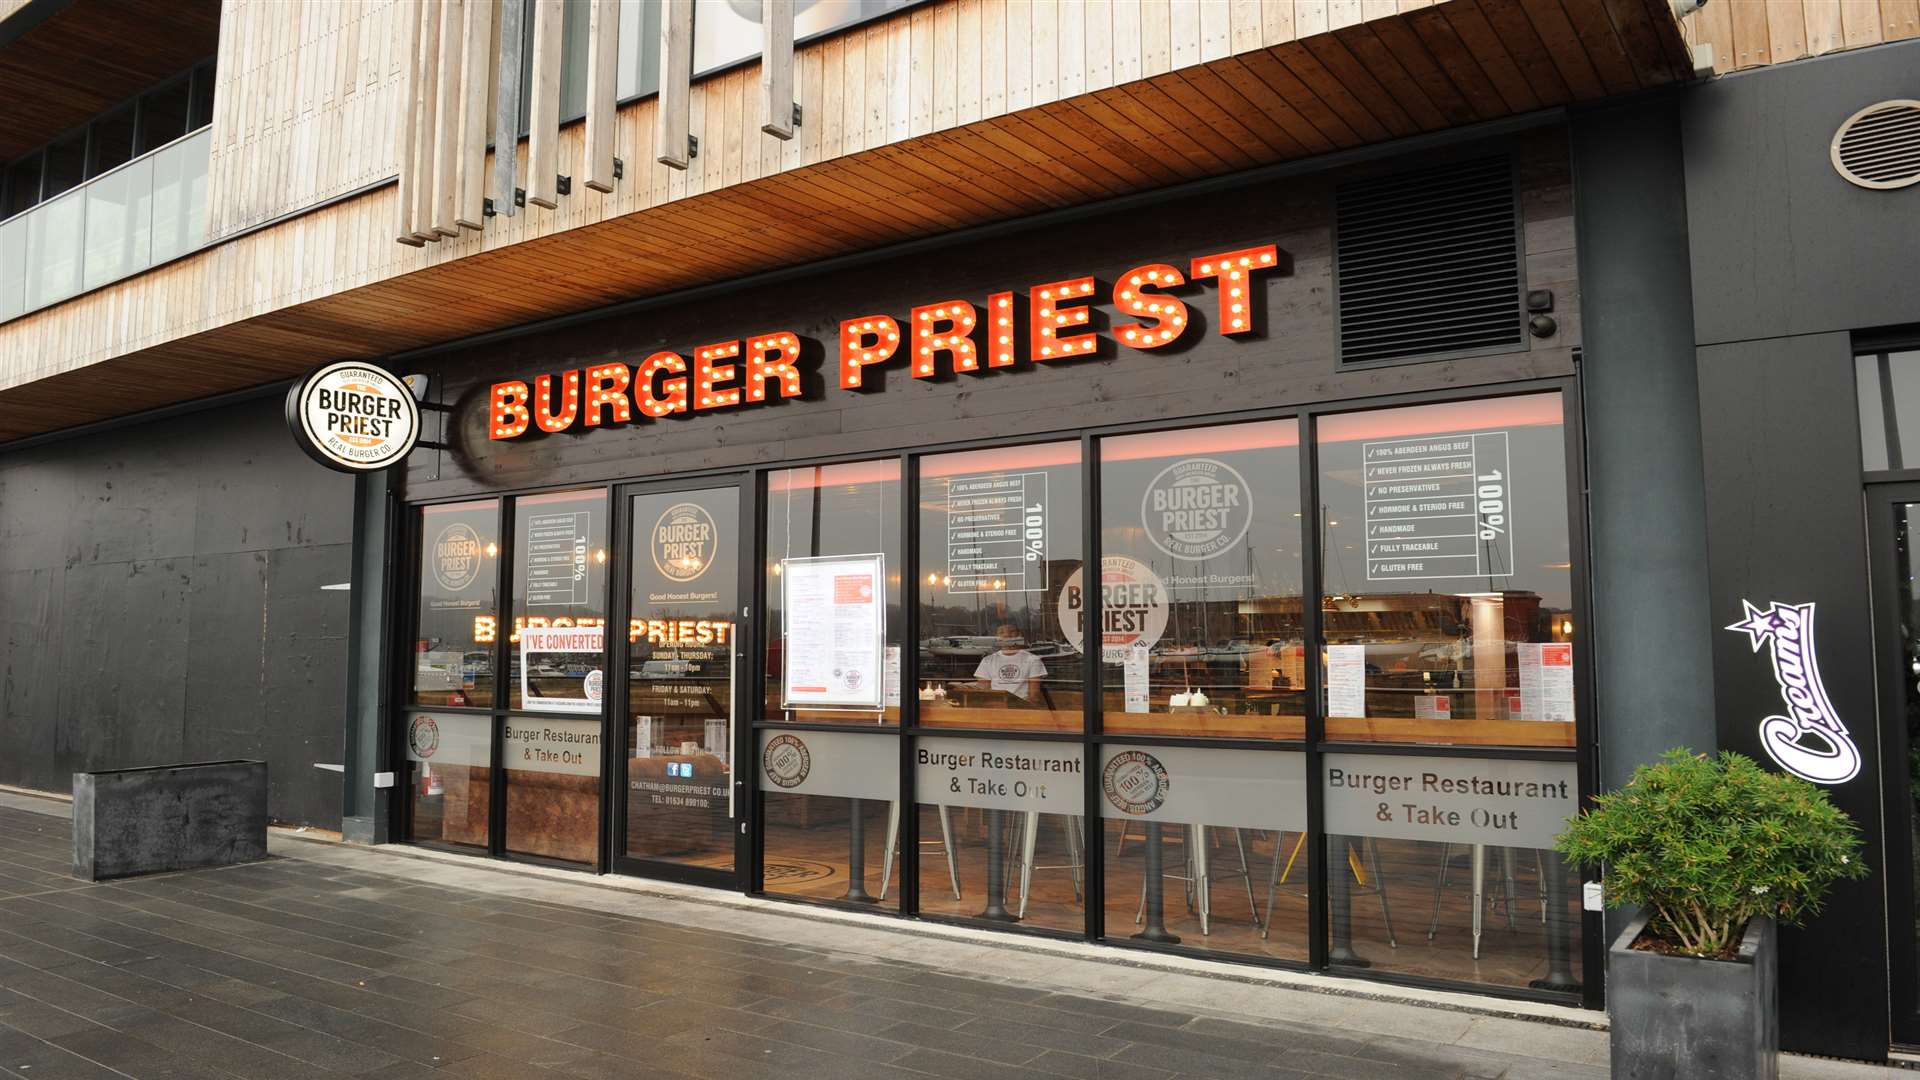 The Burger Priest has opened next door to Creams